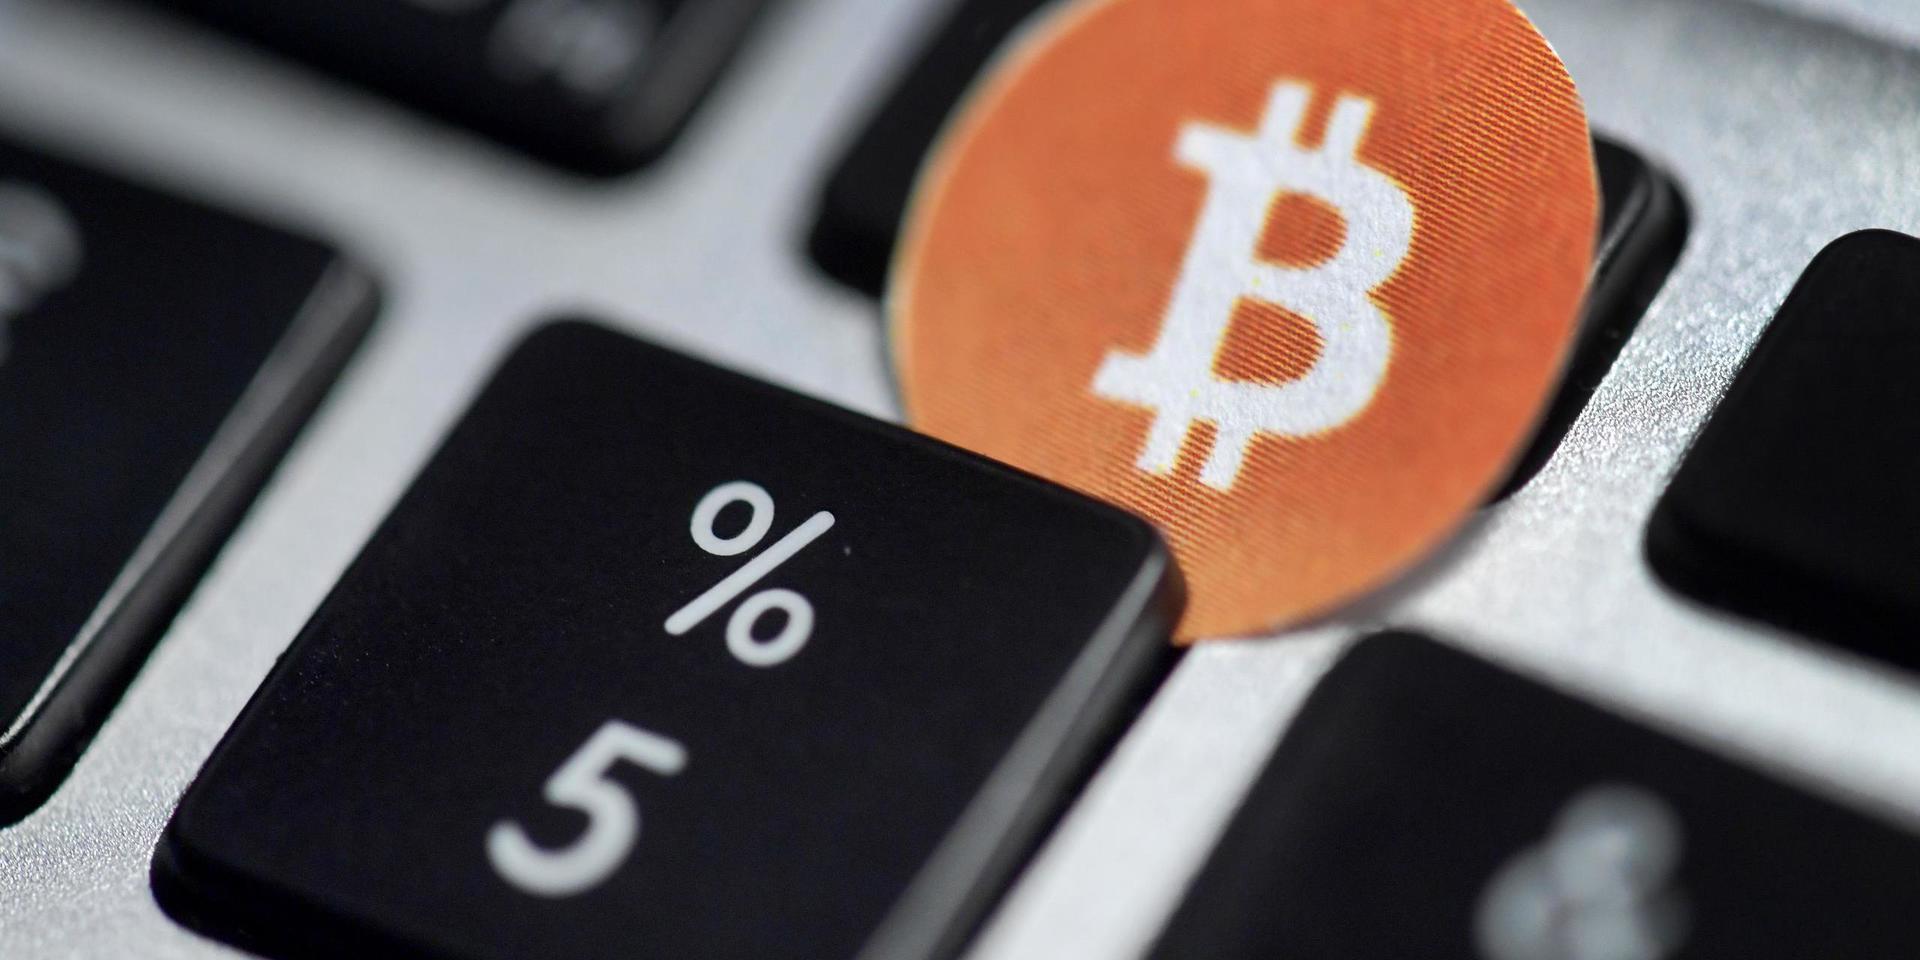 Bitcoin - en digital valuta, skapad 2009, vars huvudsyfte är att möjliggöra betalningar över Internet direkt mellan användare utan inblandning av tredje part.